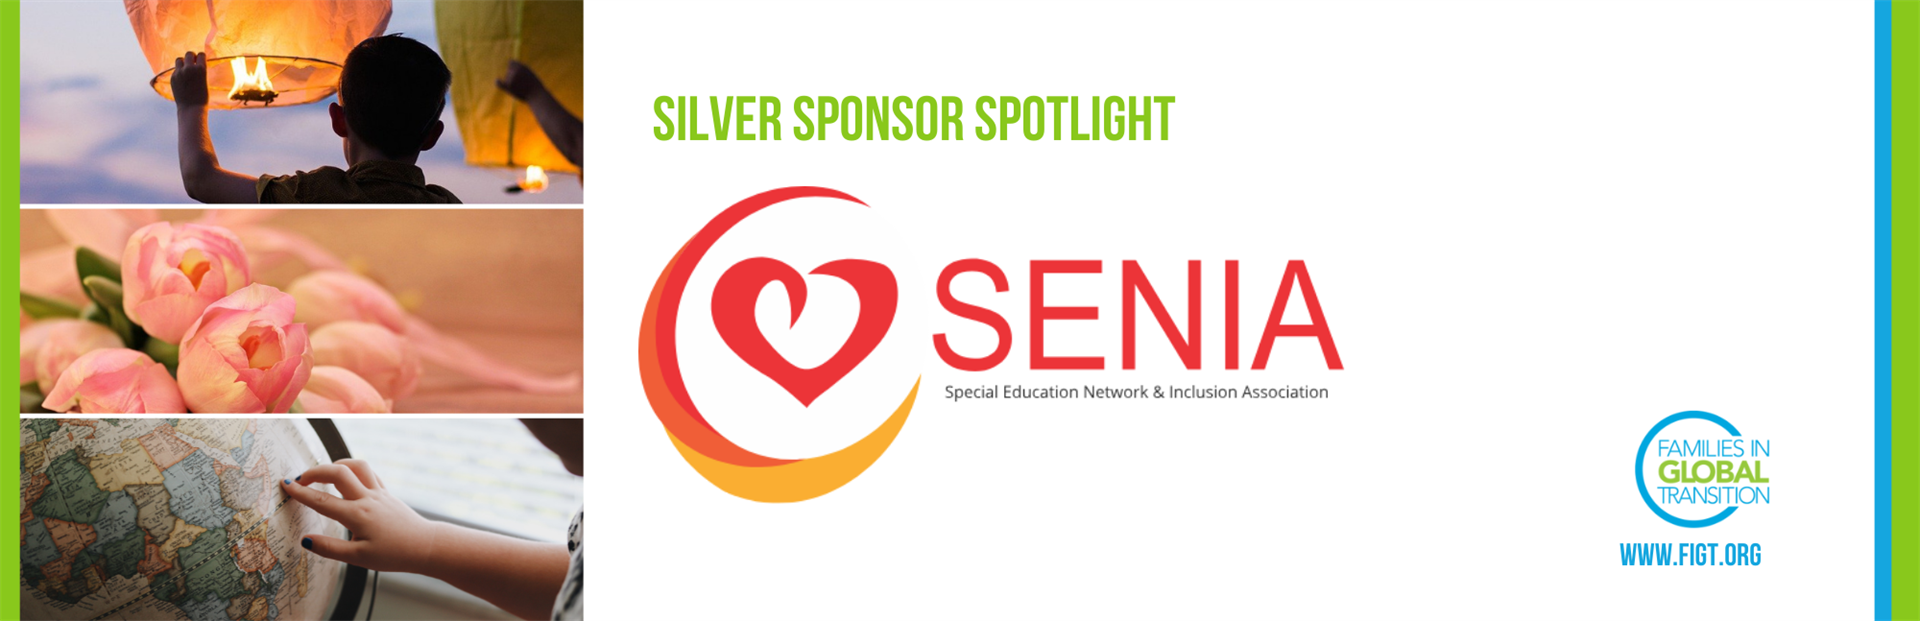 Logo for SENIA, FIGT silver sponsor